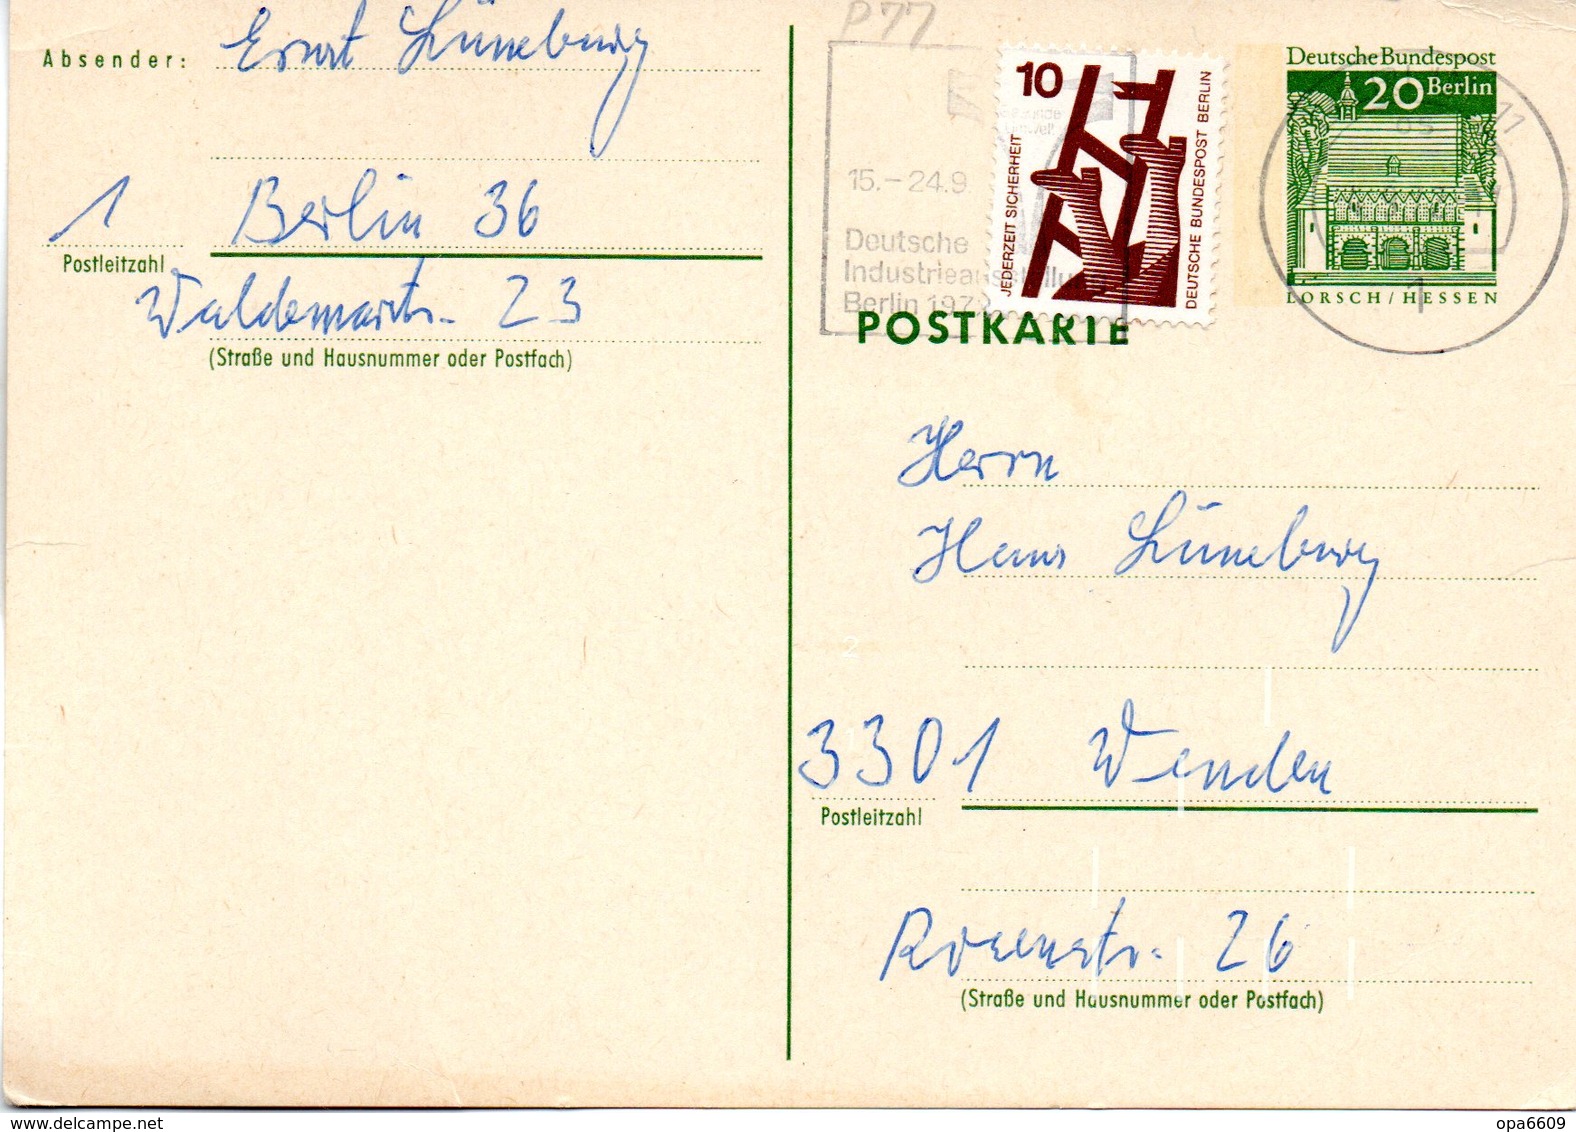 WB Amtl. Ganzsachen-Postkarte P77 ZF Wst. "Torhalle In Lorsch" 20(Pf) Grün, MWSt 4.9.72 BERLIN - Postcards - Used